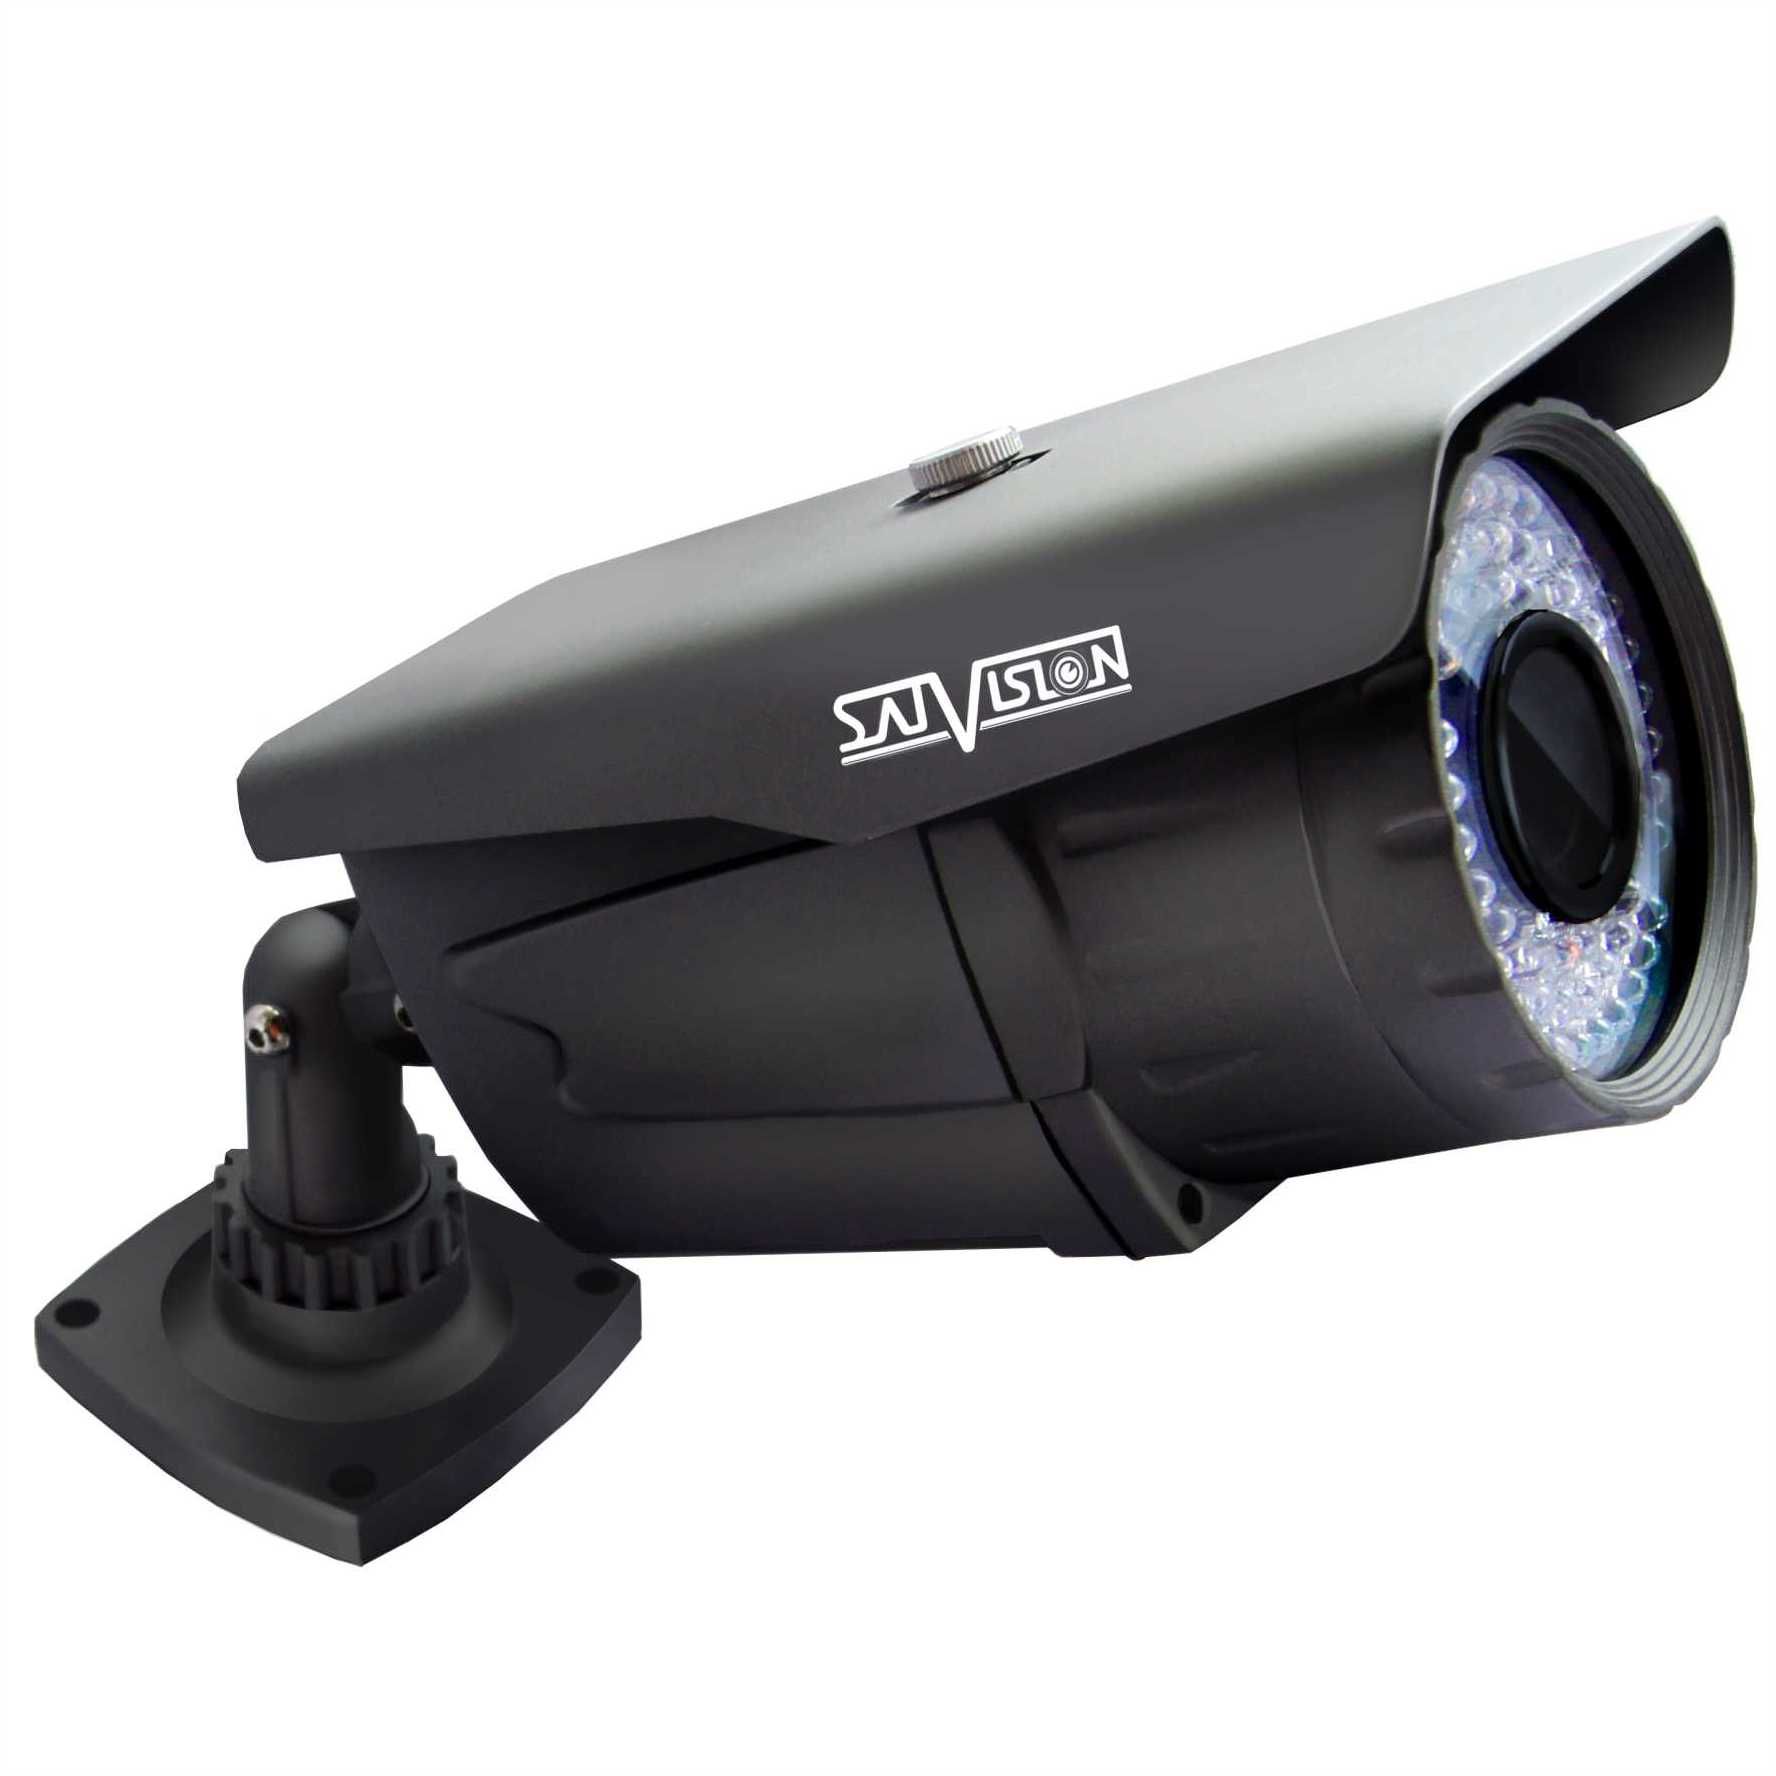 495 v. Видеокамера SVC-s492v. SVC-s492v SL OSD. SVC-s692v SL 2 Mpix 2.8-12mm OSD. Камера Satvision уличная 5мп.